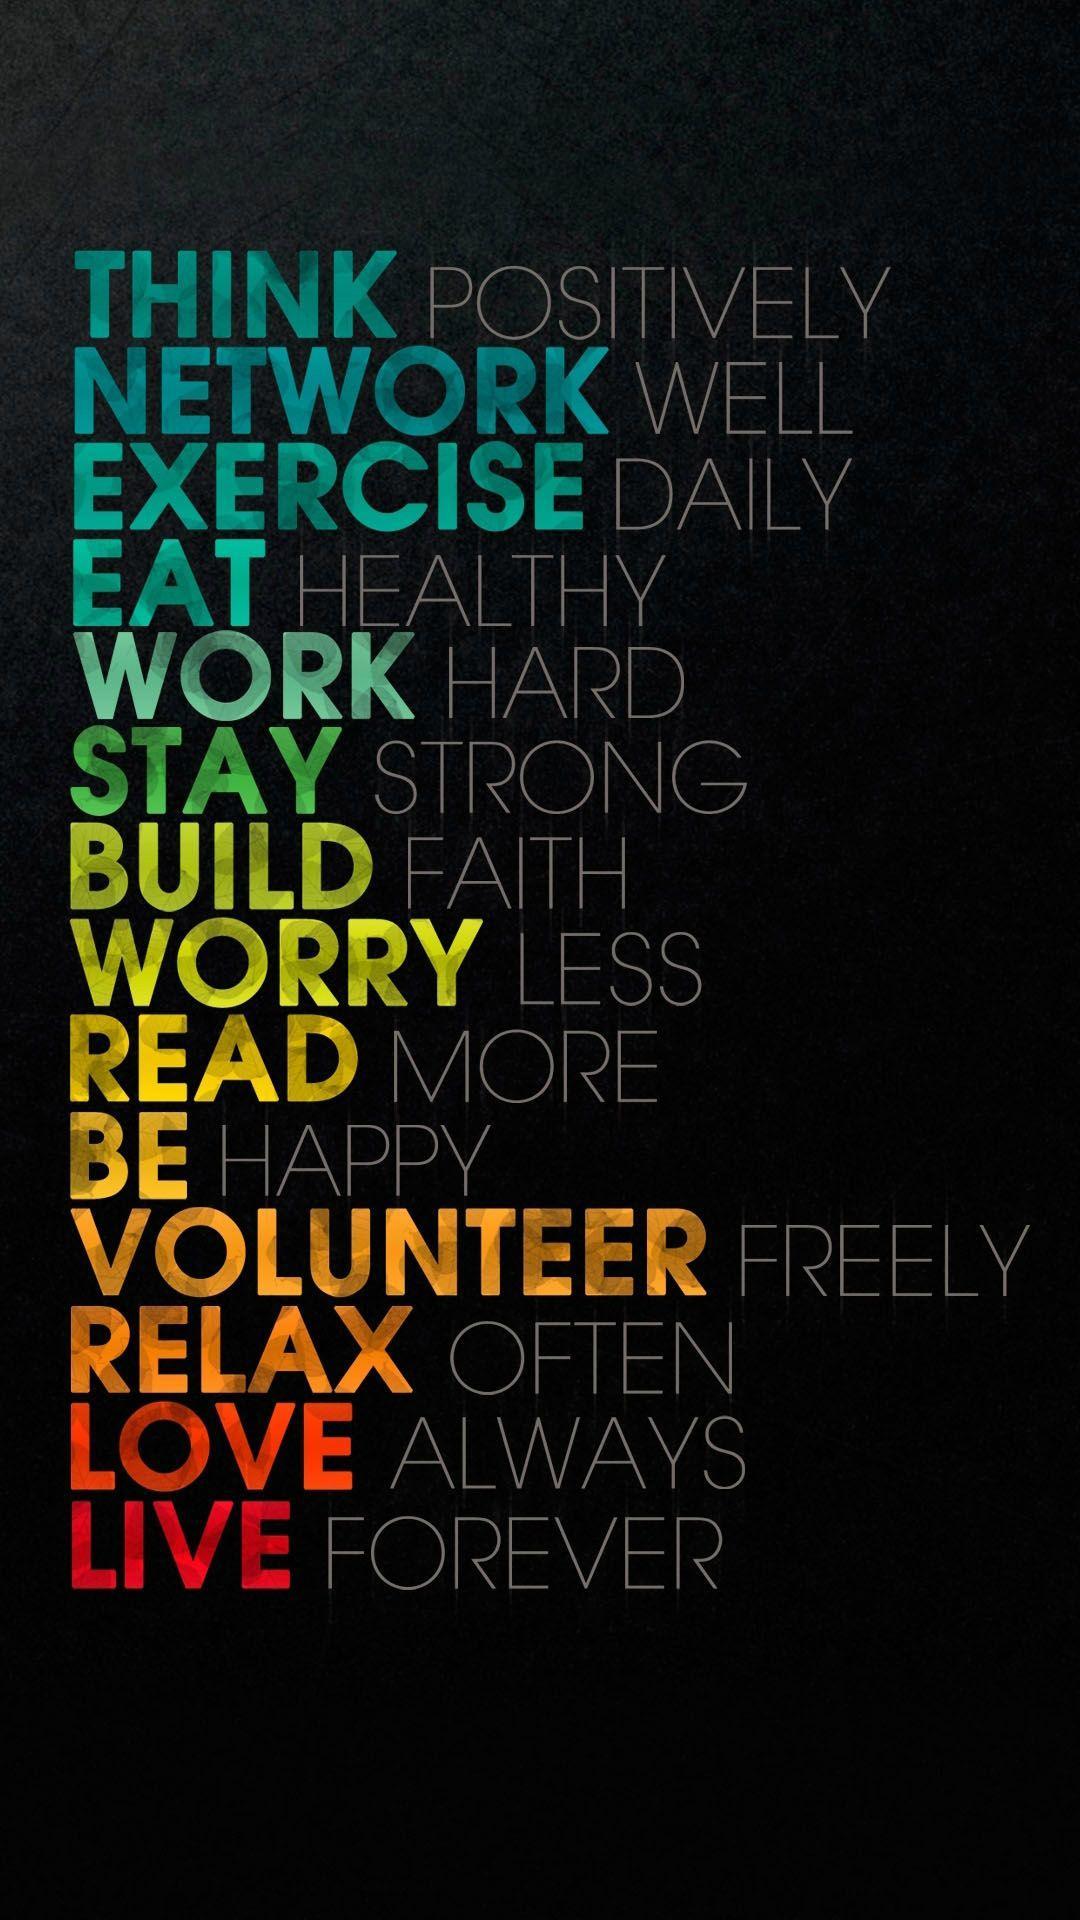 Words Of Wisdom iPhone 7 Wallpaper Download. iPhone Wallpaper